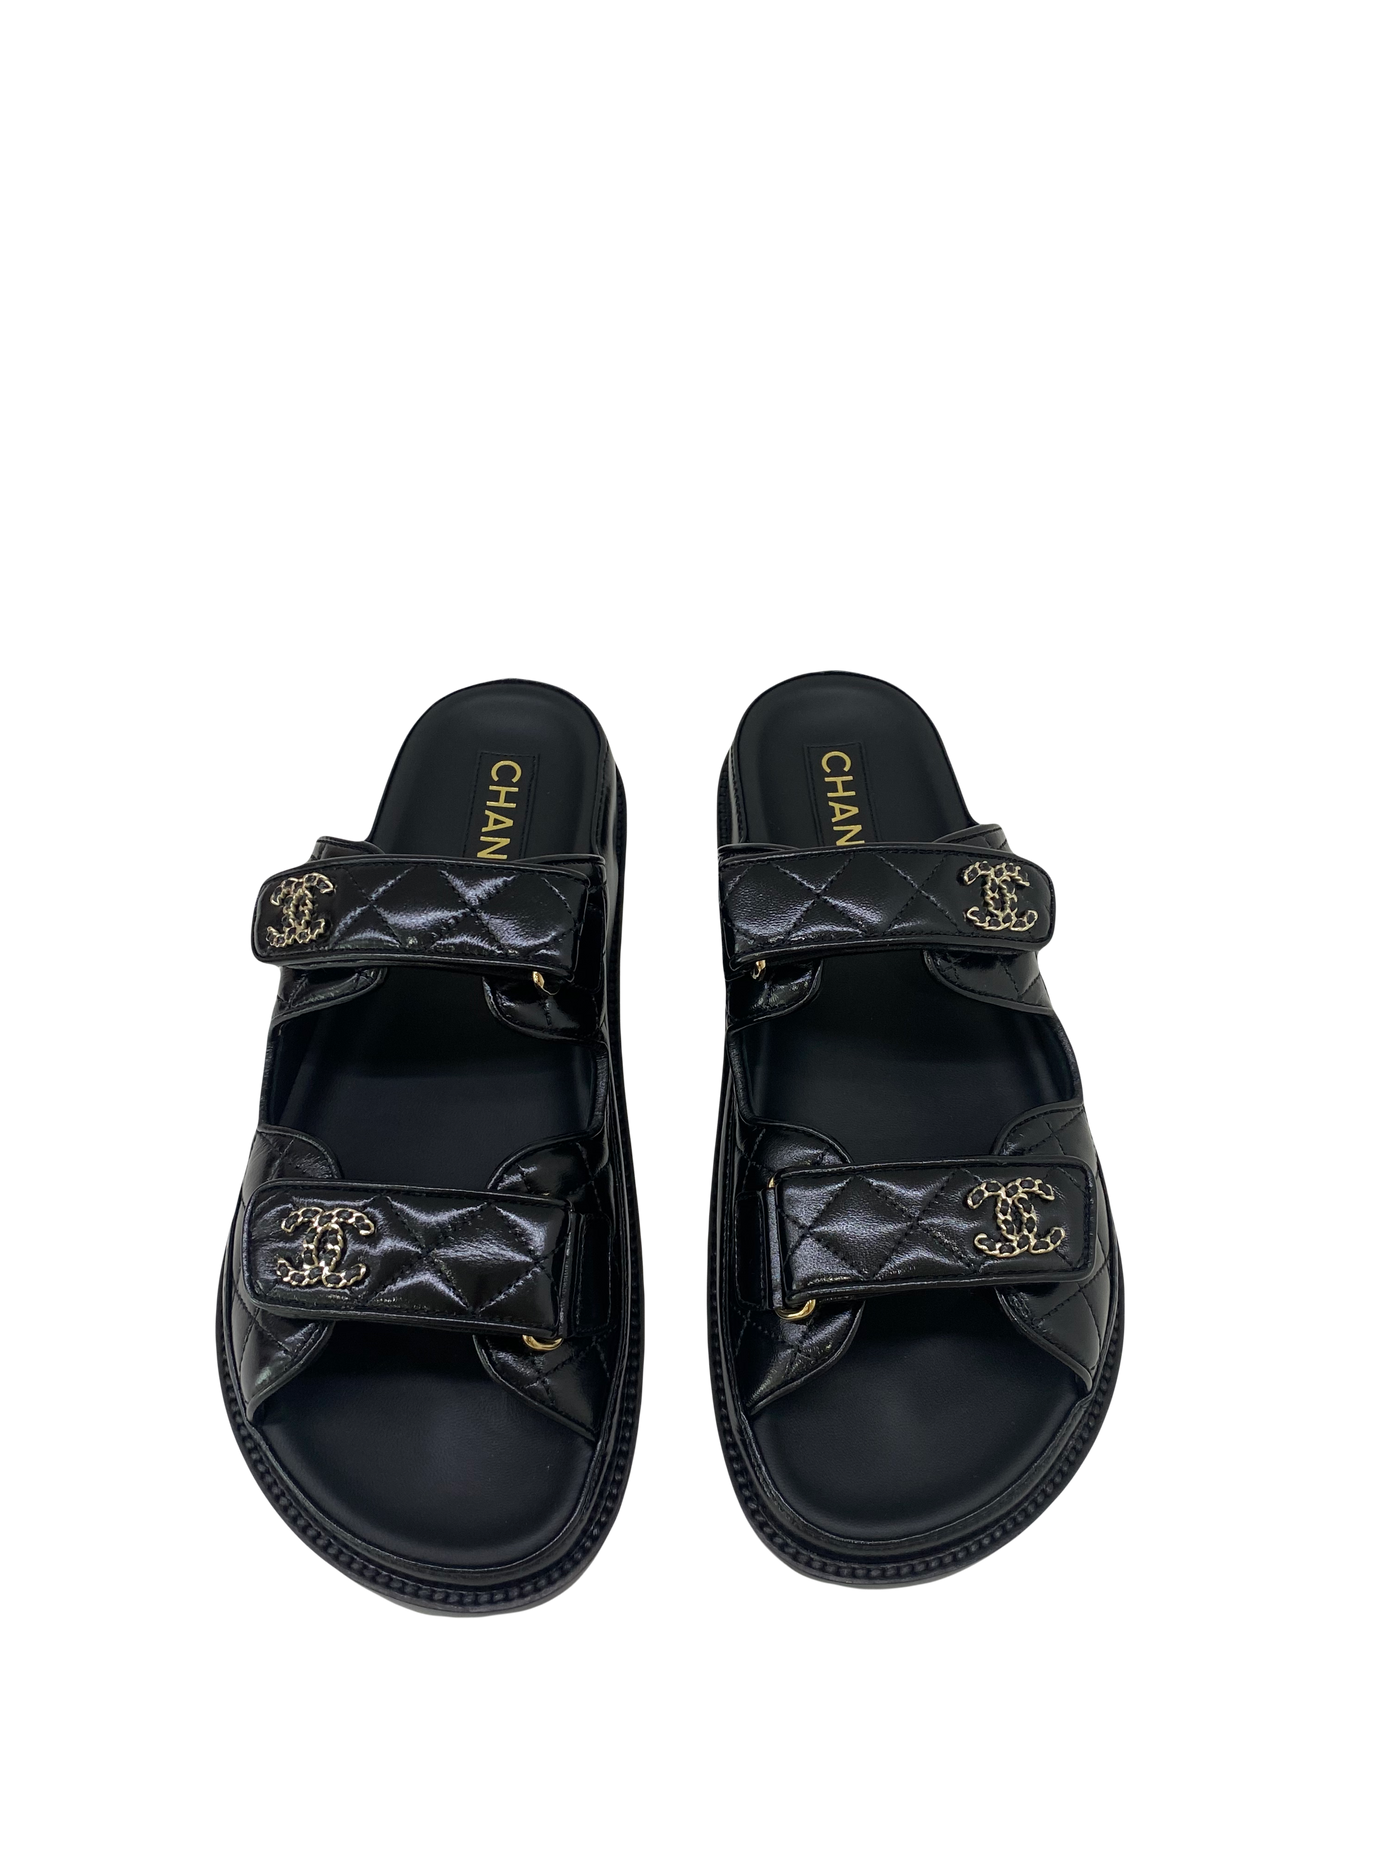 Chanel Dad Sandal Slide - Size 40